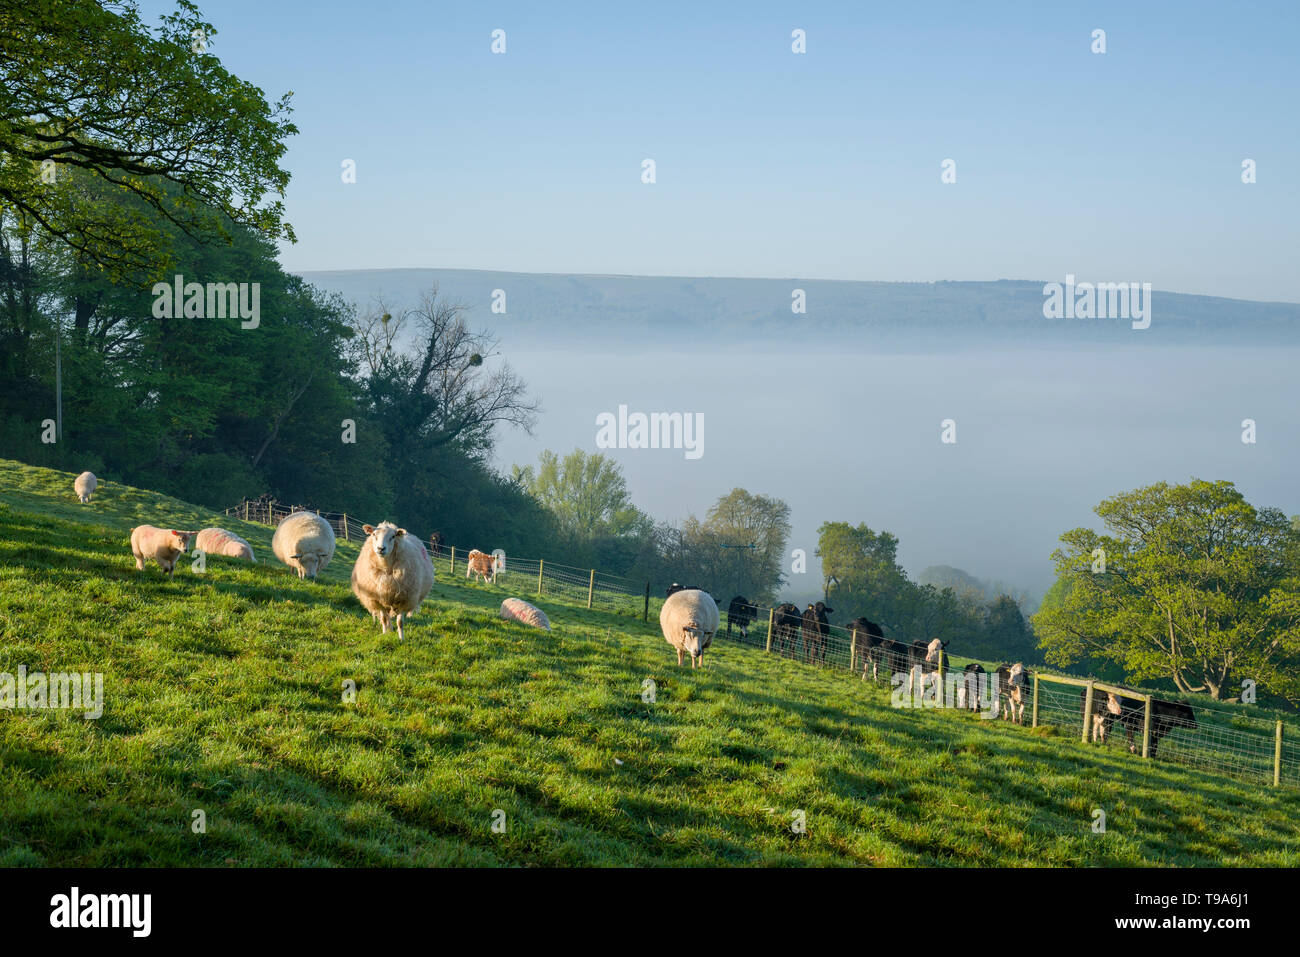 Schafe und Rinder an einem frühlingsmorgen am Alten Hügel mit Nebel und die Mendip Hills in der Ferne. Wrington, North Somerset, England. Stockfoto